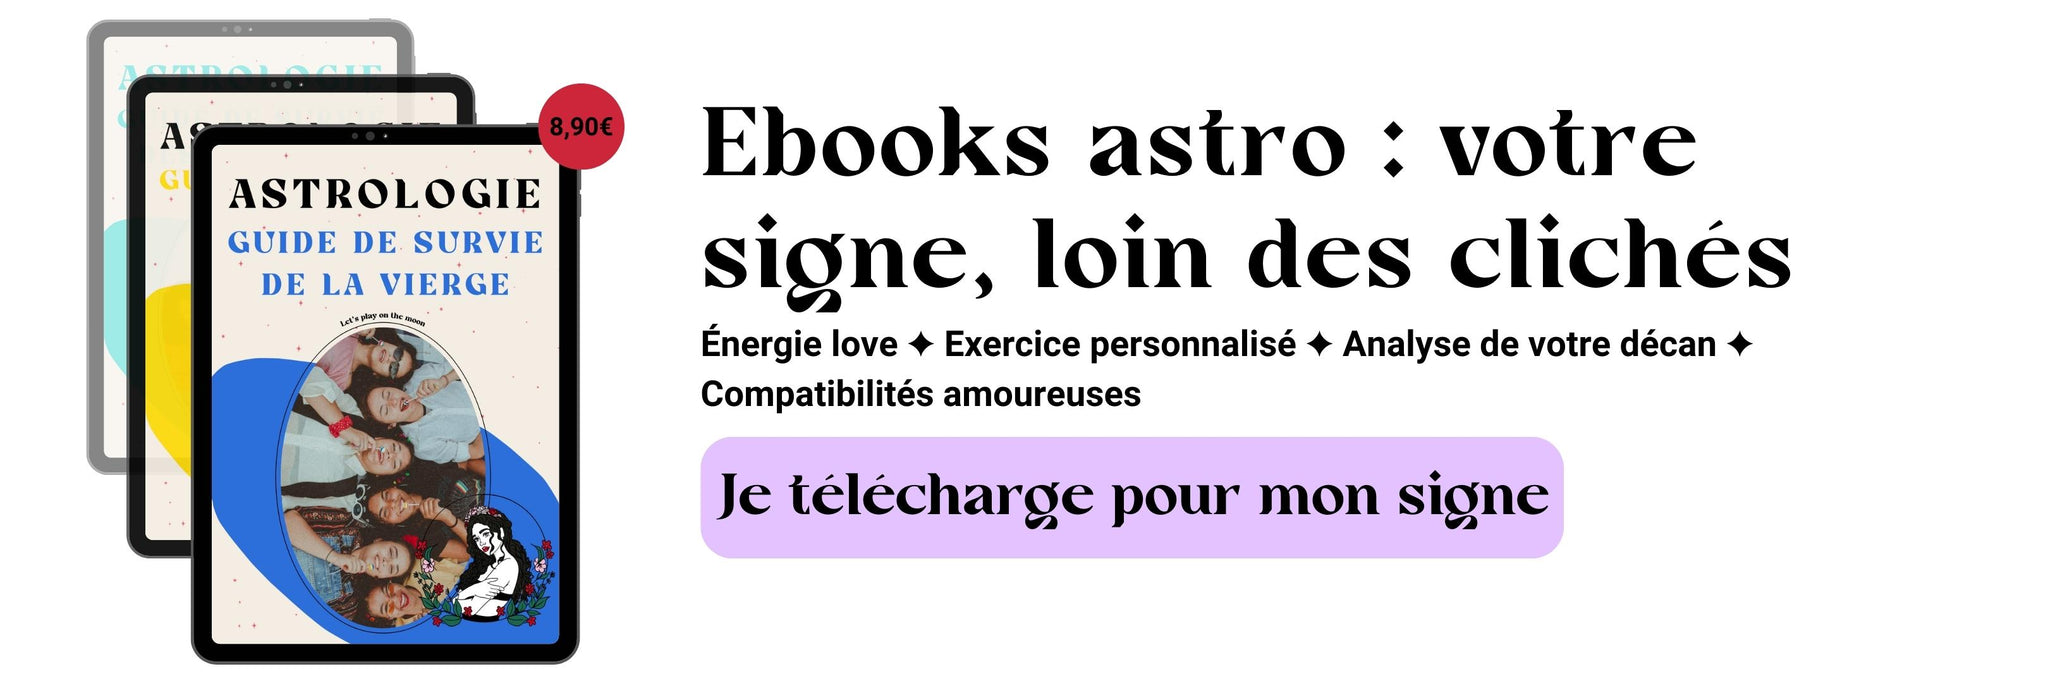 Ebook Astro : l'astro-coaching selon votre signe